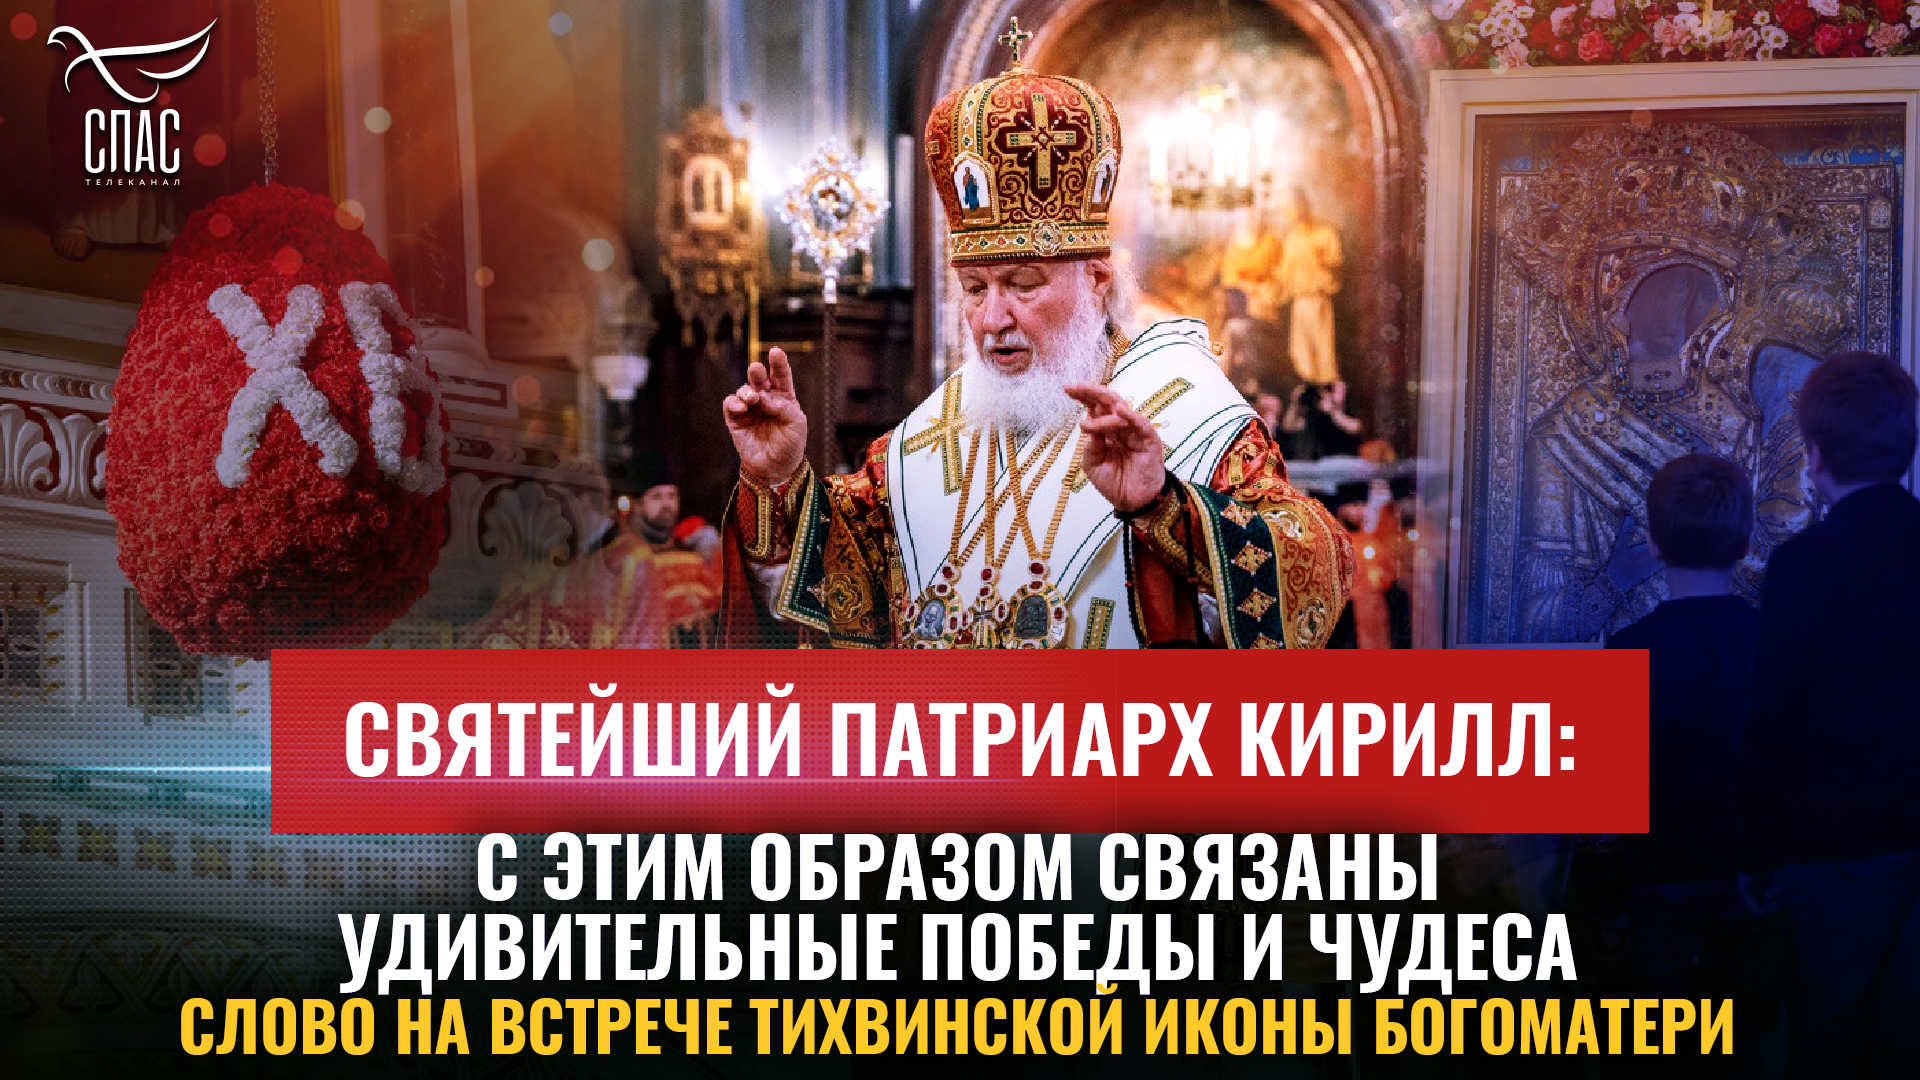 Святейший Патриарх Кирилл: С этим Образом связаны удивительные победы и чудеса